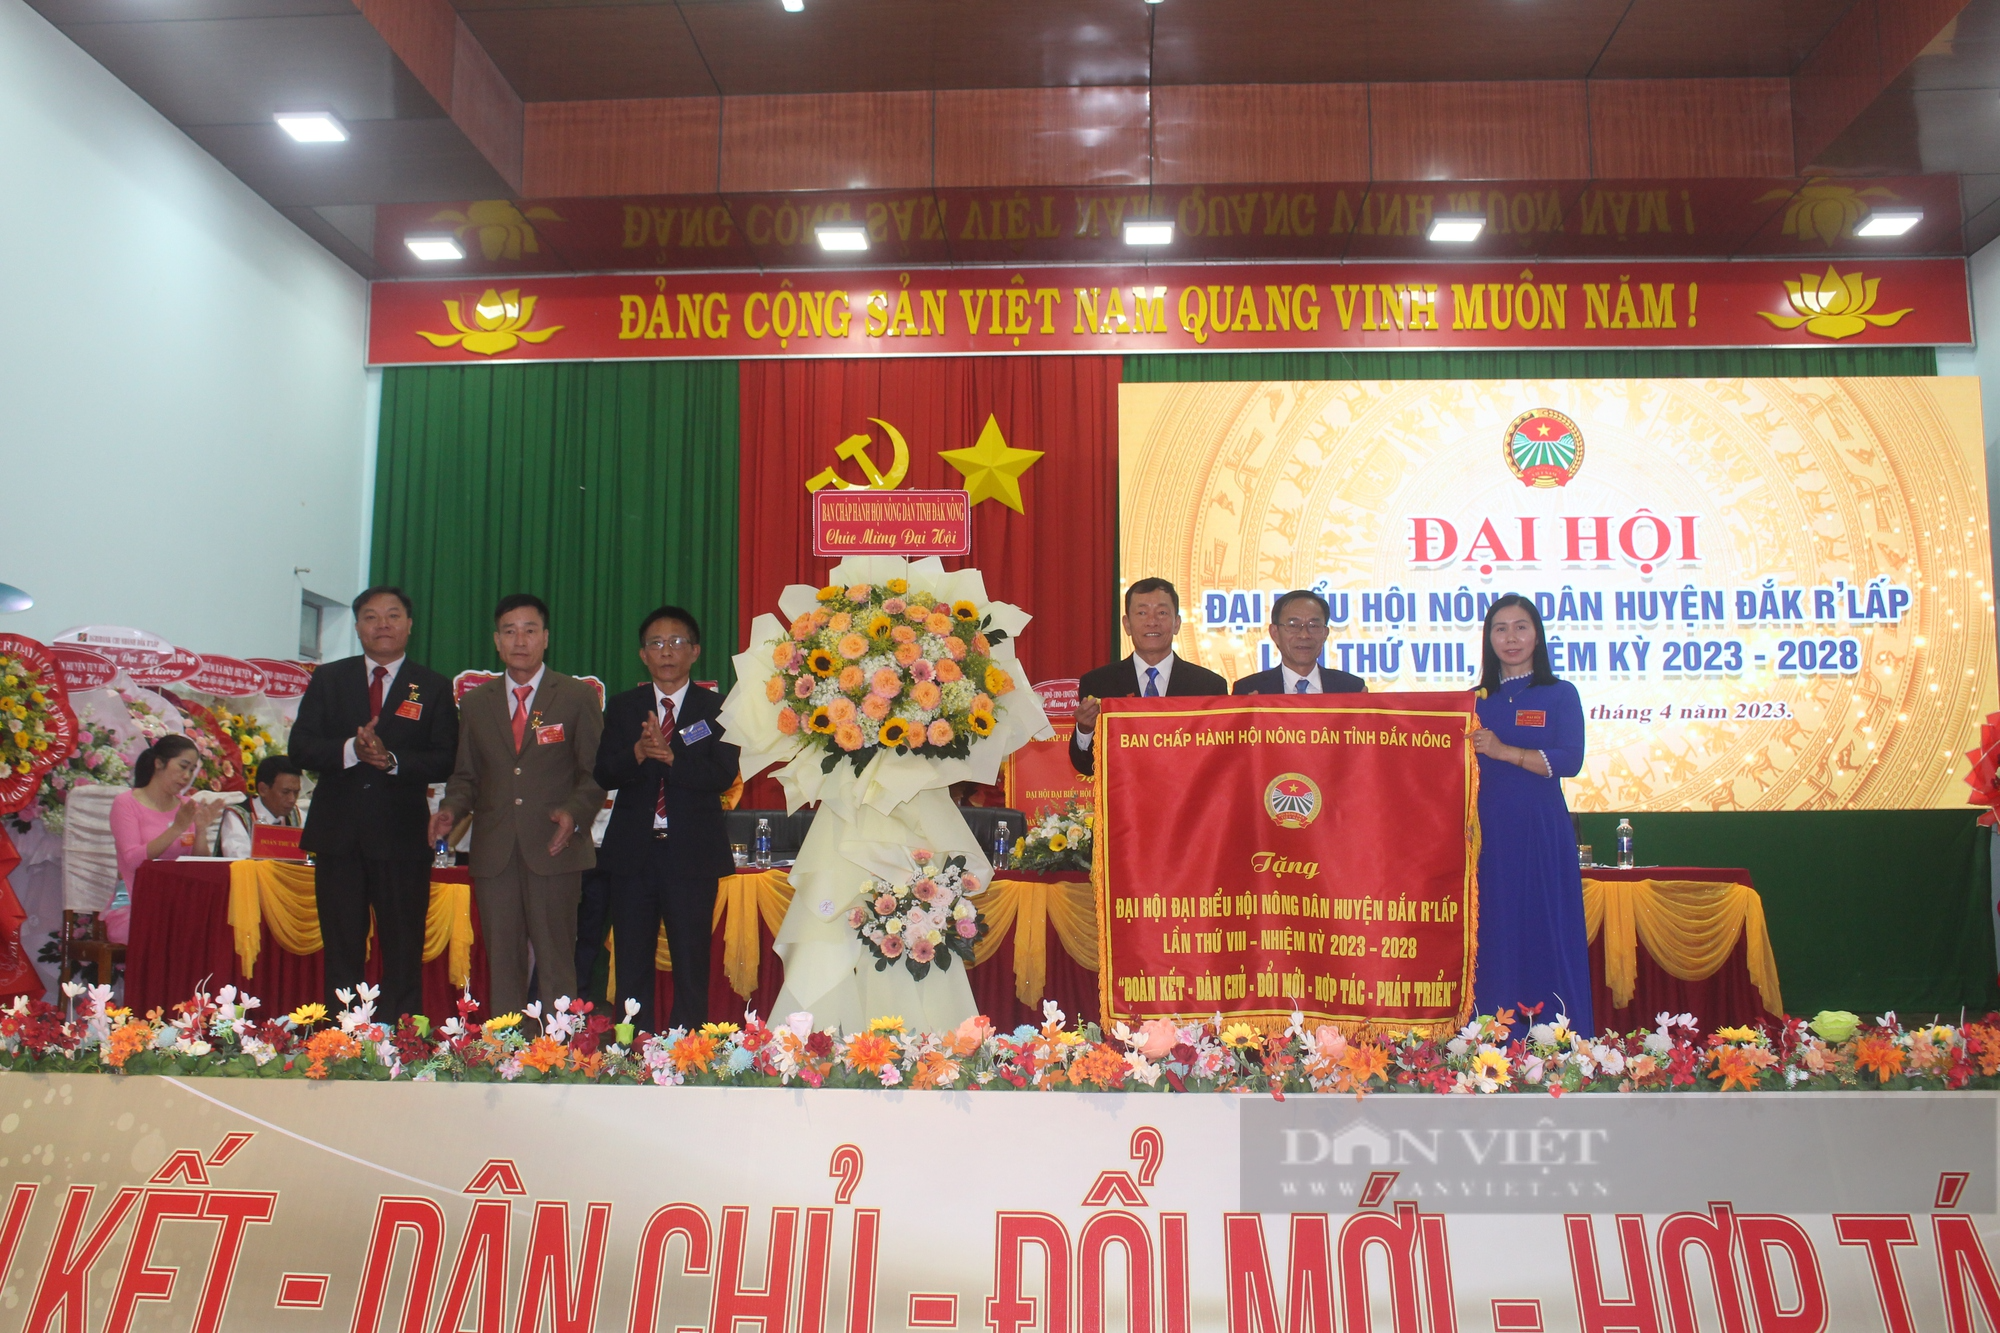 Đại hội Hội nông dân huyện Đắk R'lấp: Nông dân đóng góp hơn 125 tỷ đồng phát triển hạ tầng cơ sở nông thôn - Ảnh 3.